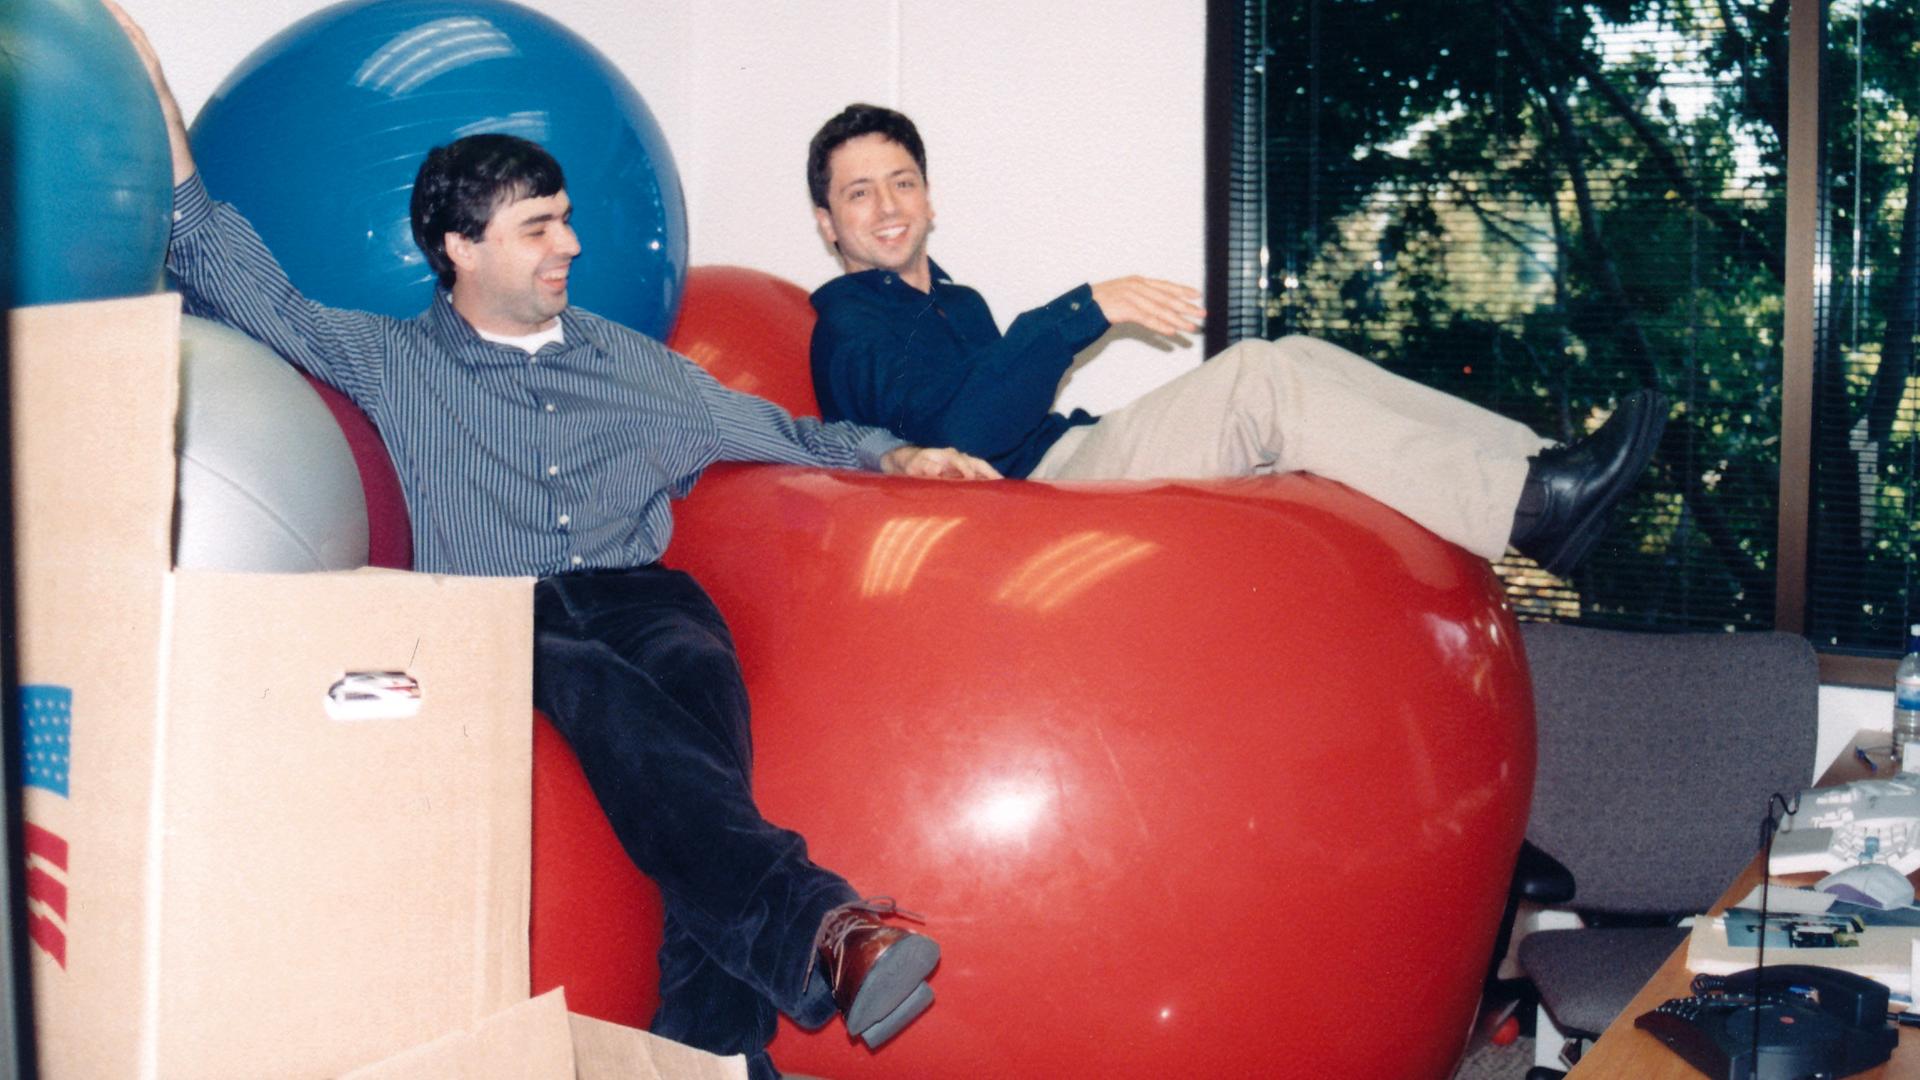 Archiv: Gründer Larry Page und Sergey Brin, aufgenommen am 01.01.1998 